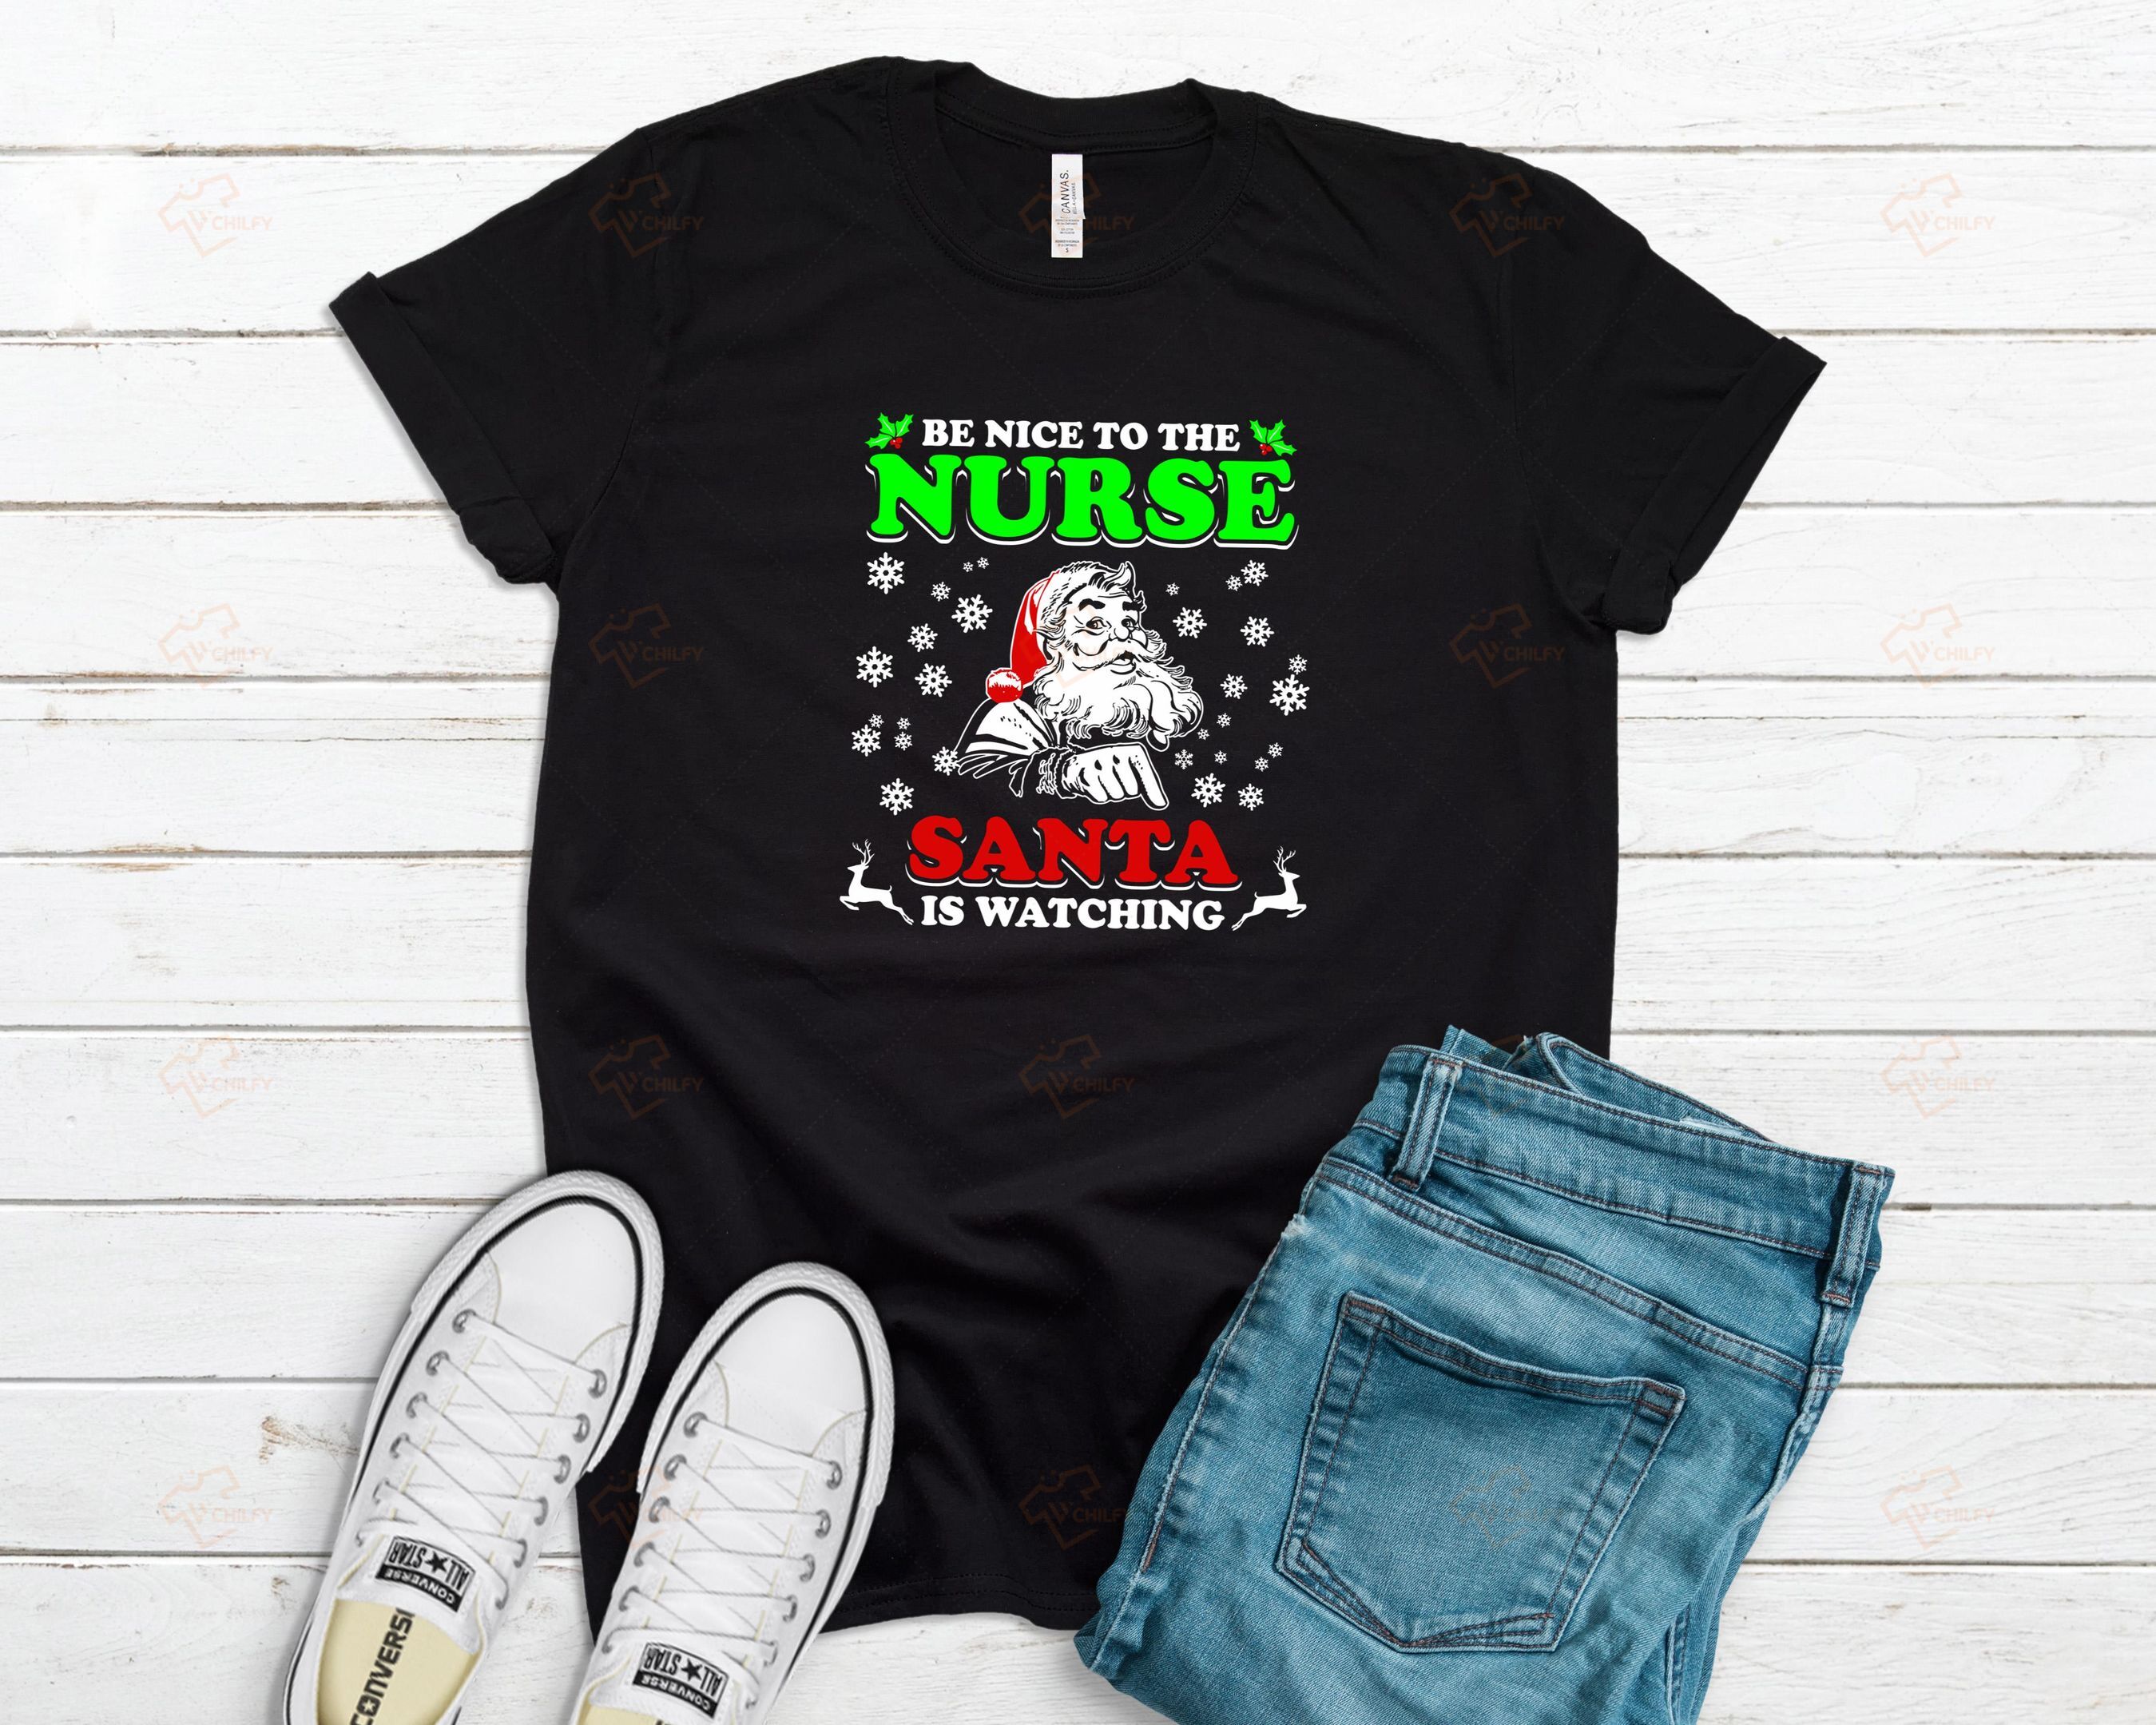 Nurse With Santa Shirt, Christmas Gift For Nurse, Christmas Nursing Shirt, Funny Nursing Shirt